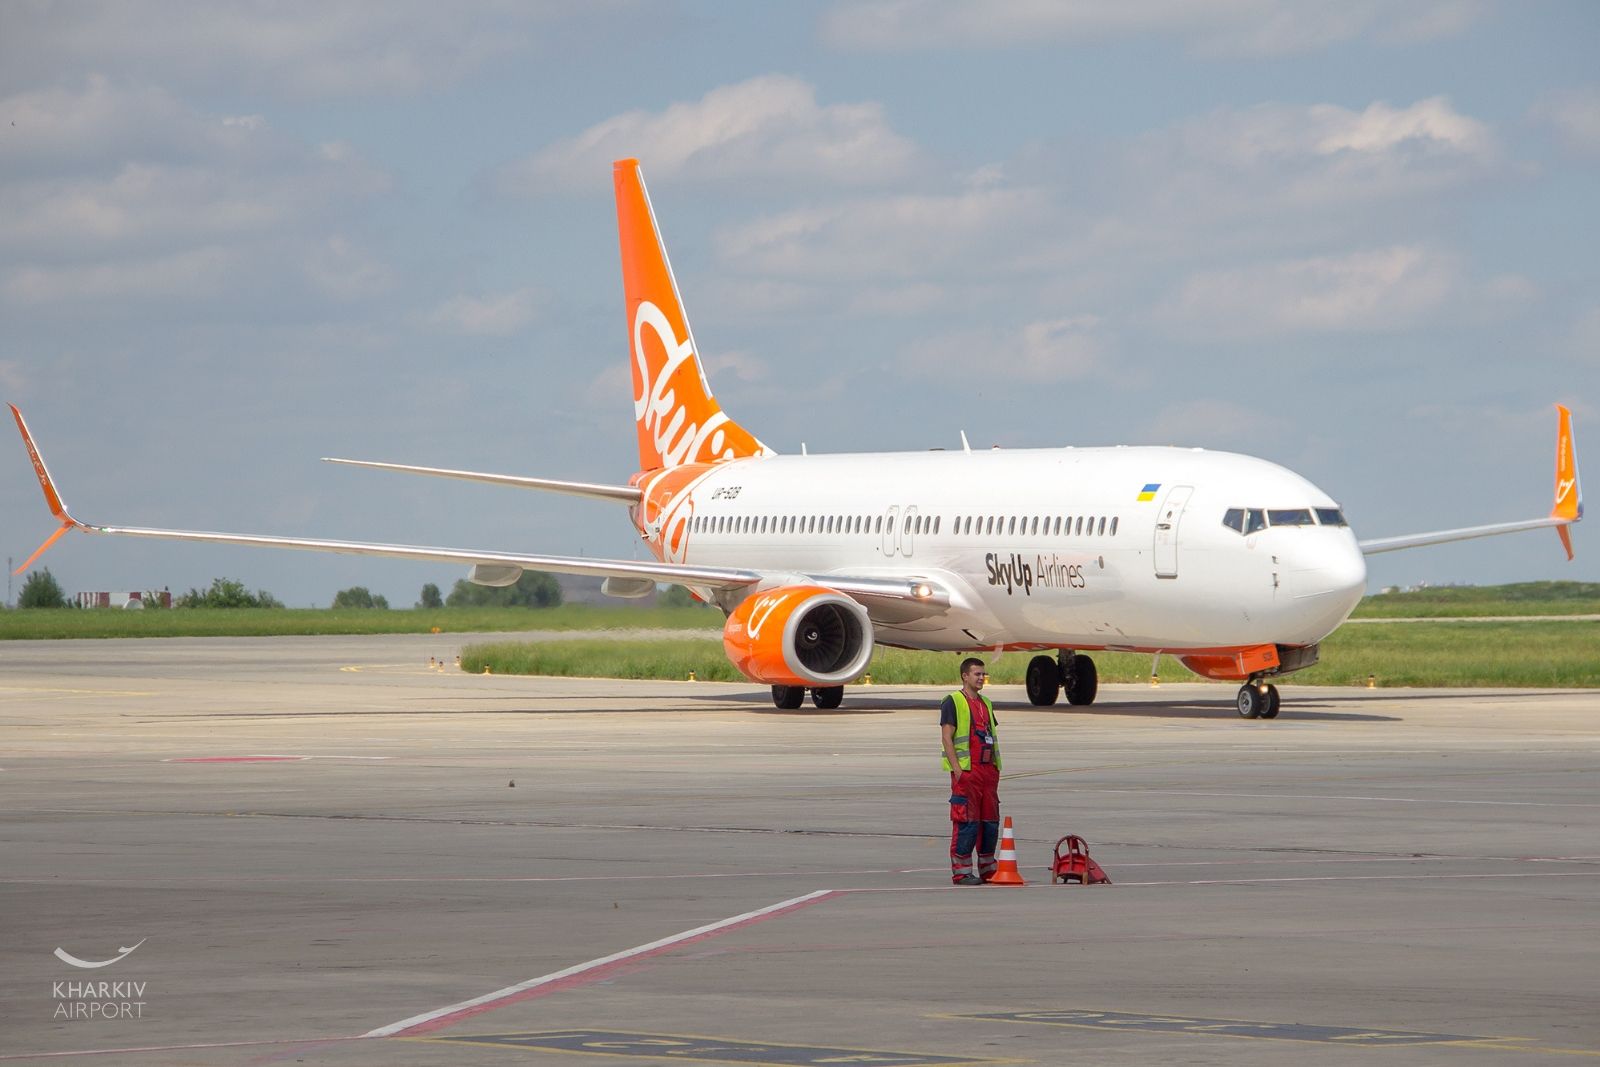 Аэропорт, управляемый компанией Ярославского, отправил первые регулярные рейсы из Харькова в Римини и Одессу